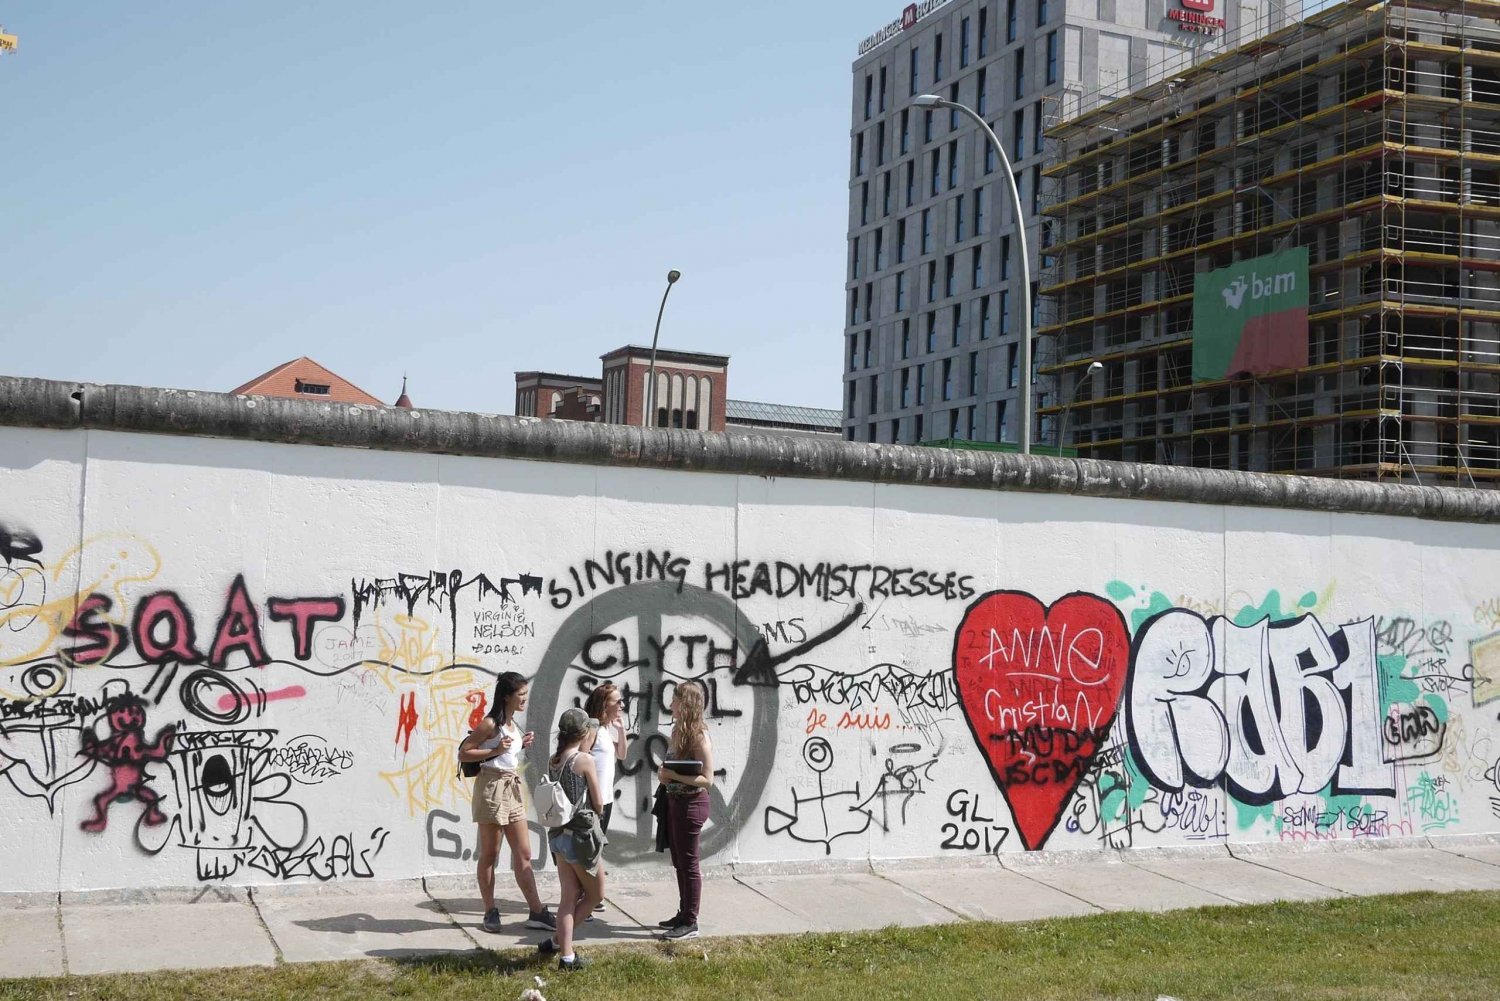 Berlino: Storia e percorsi alternativi con guida locale